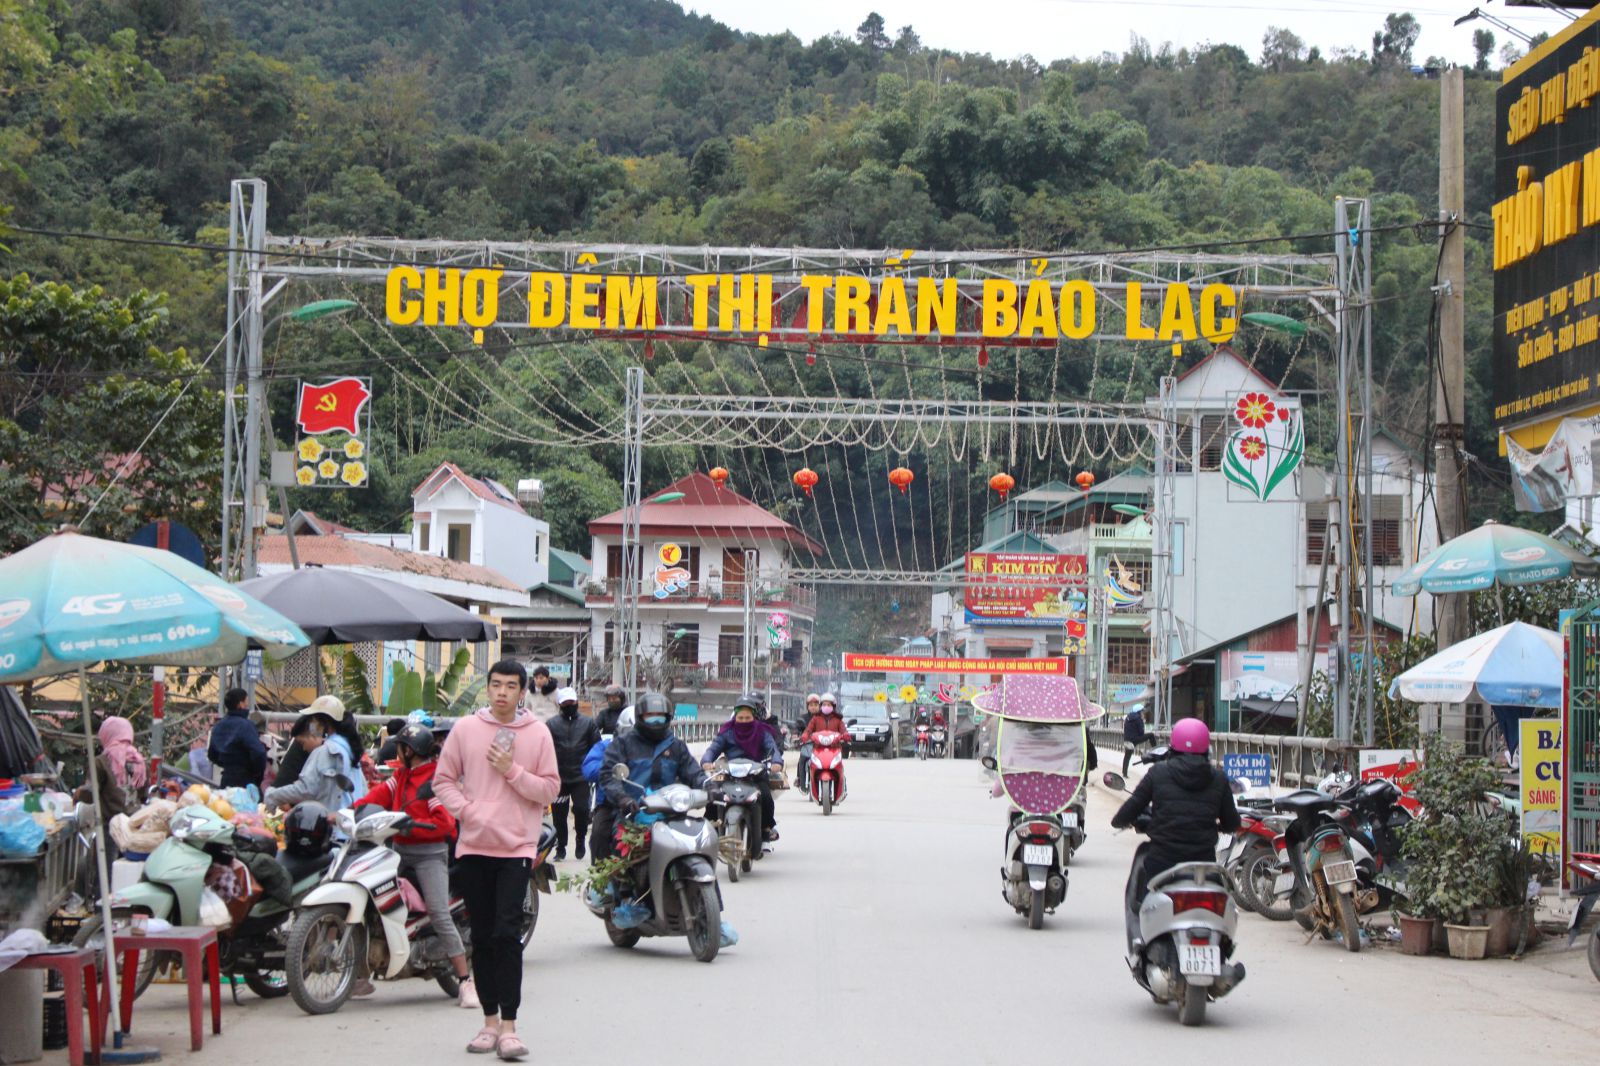  Chợ đêm thị trấn Bảo Lạc